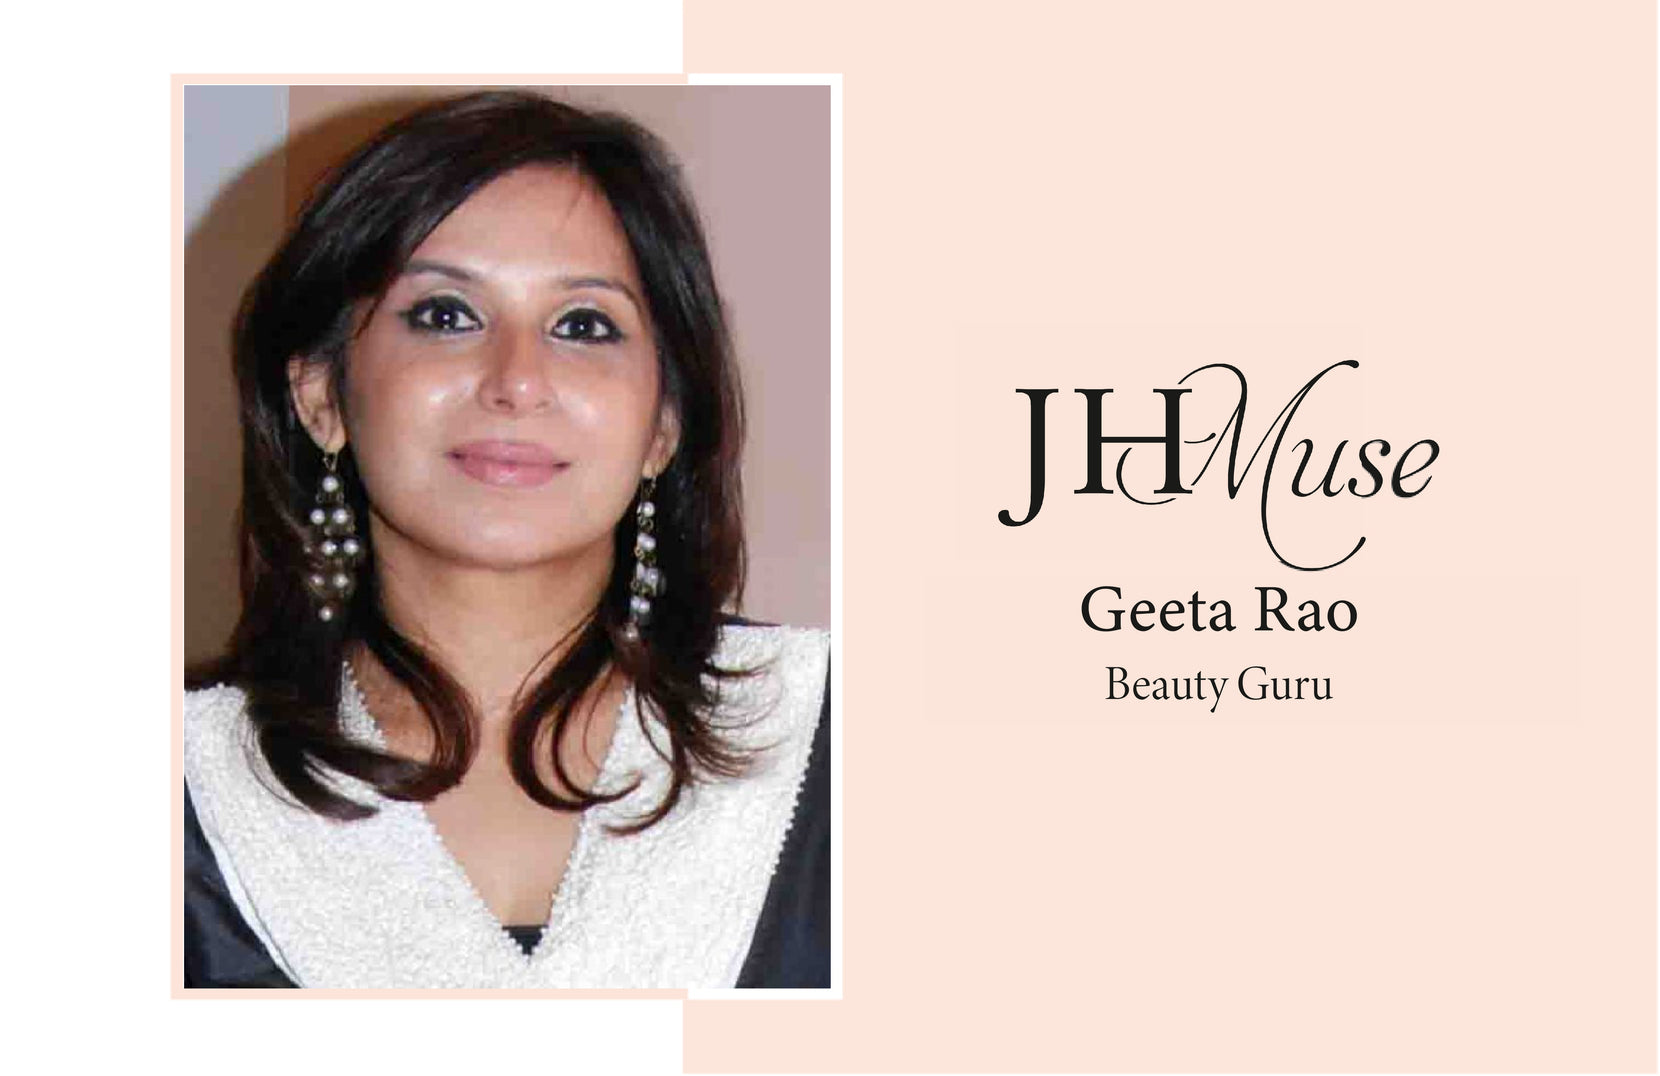 Beauty Guru Geeta Rao Shares Her Skincare Rules